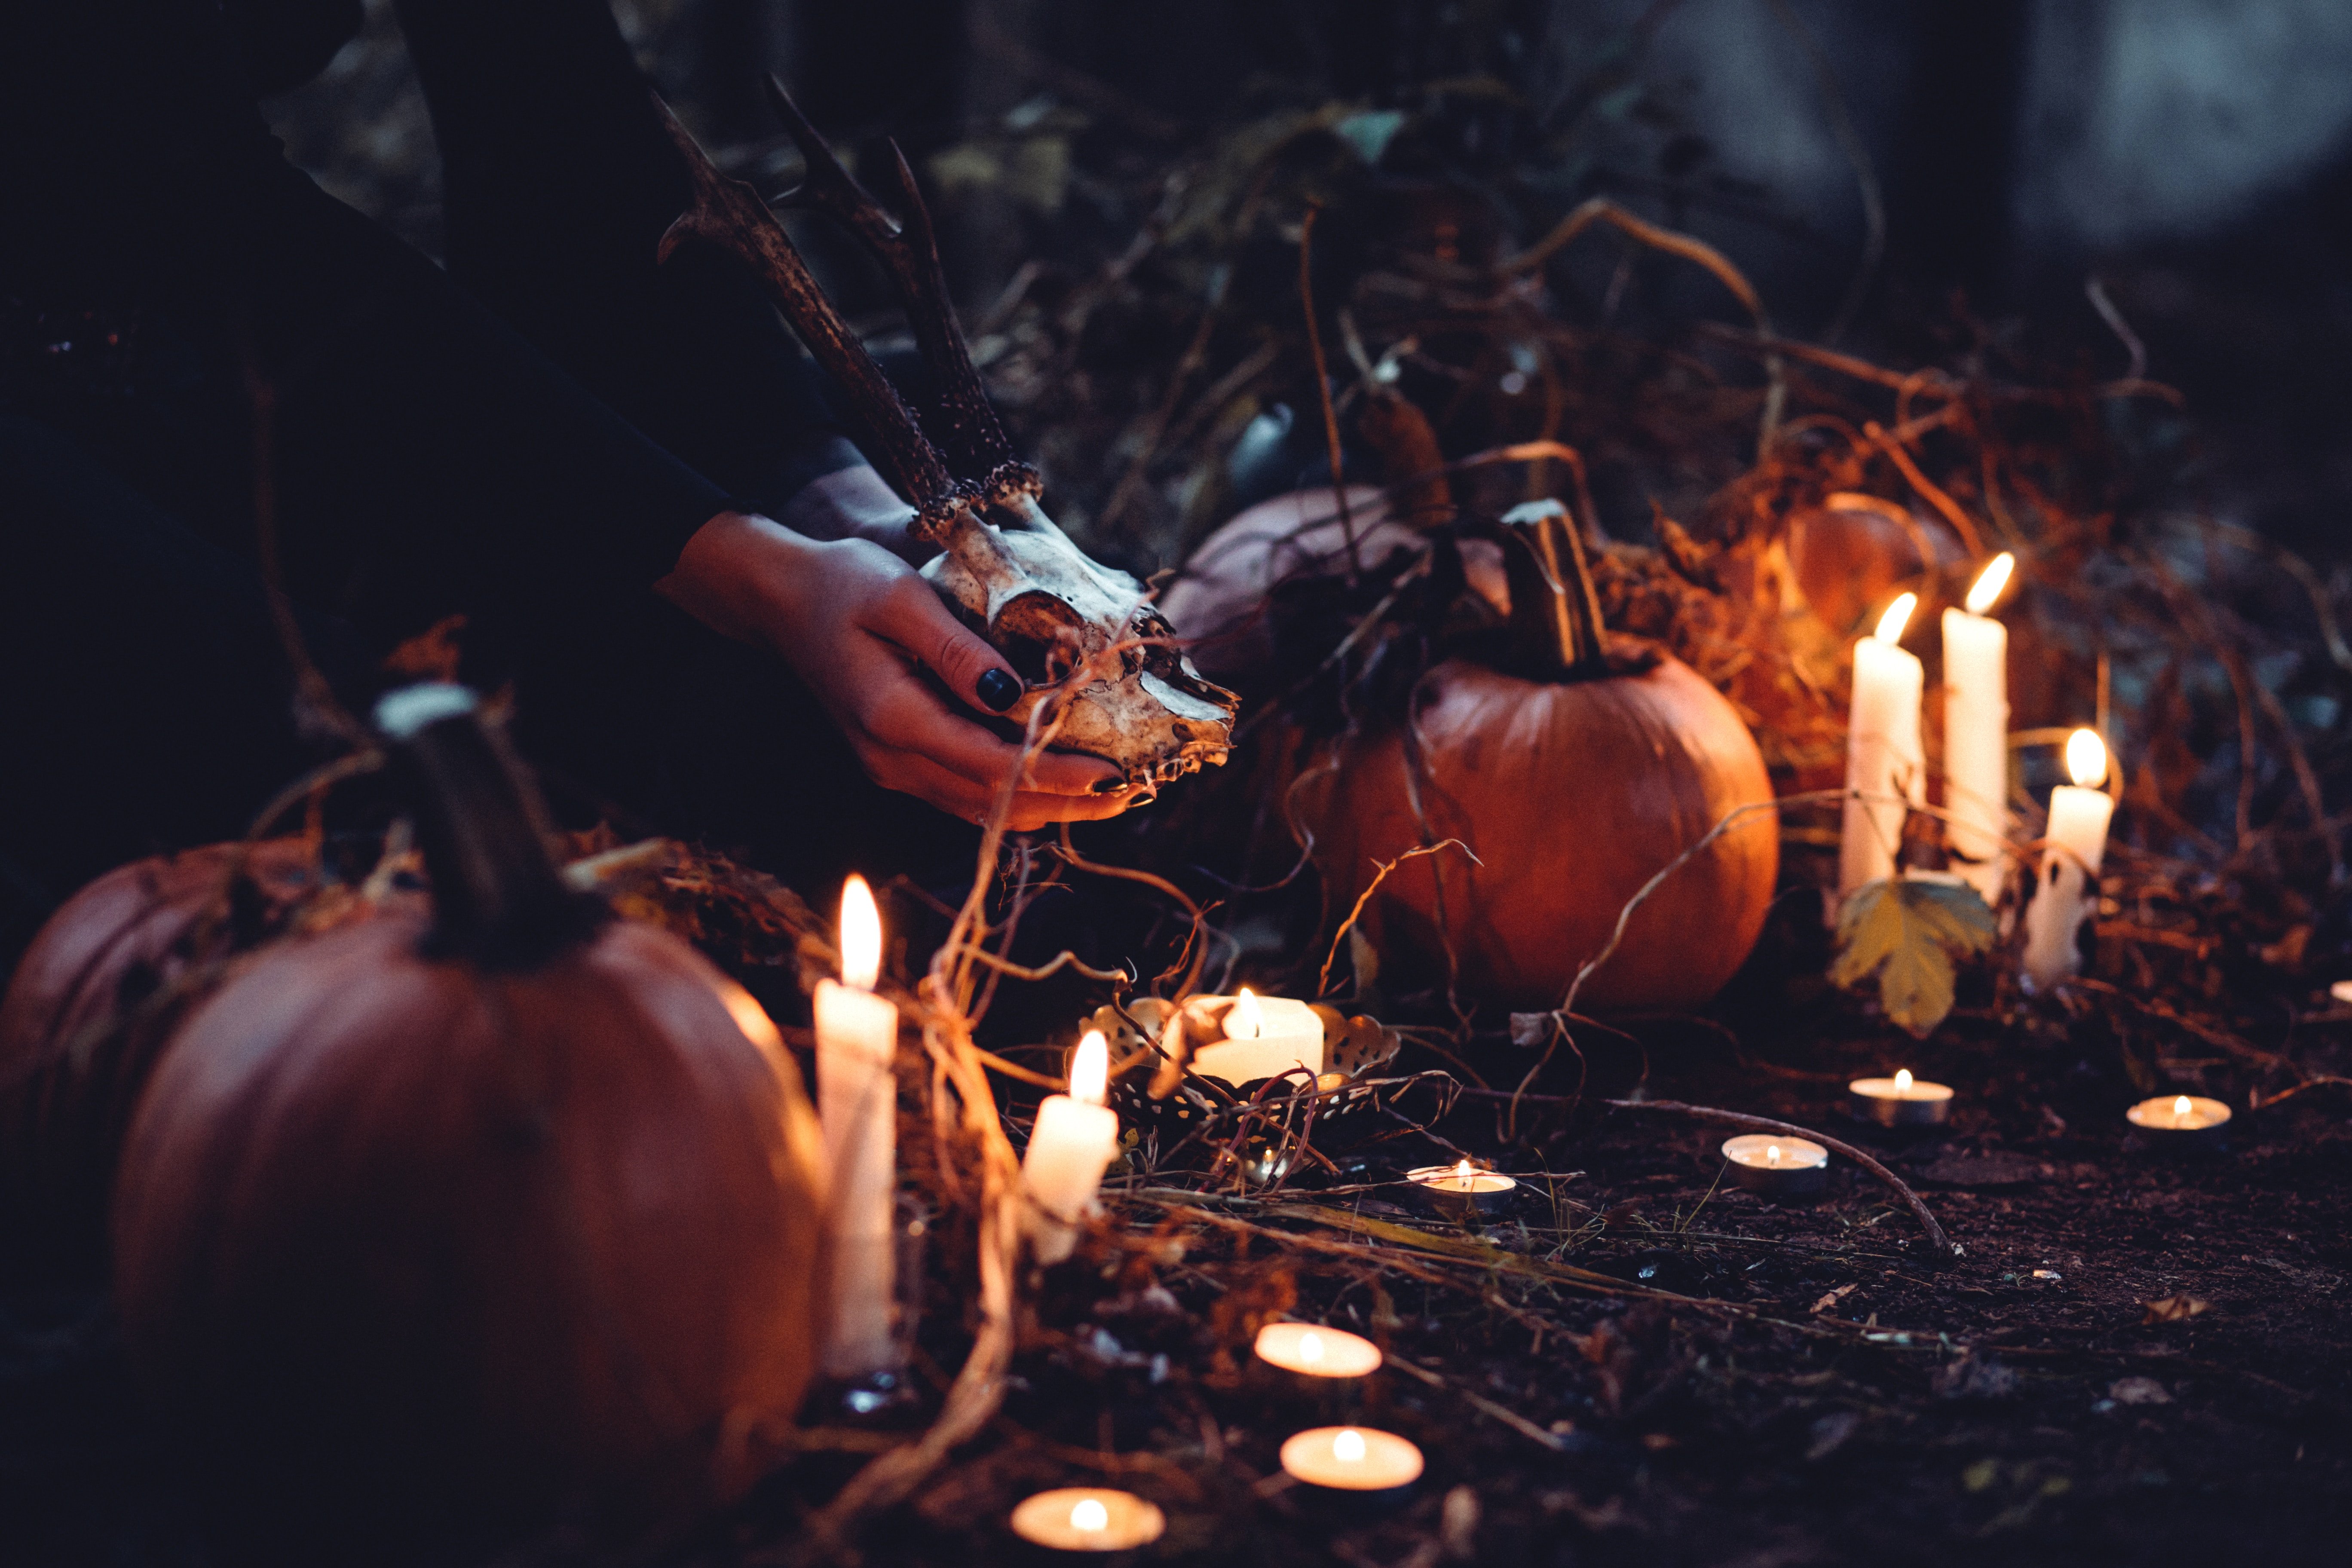 A spooky Halloween scene | Photo by freestocks.org on Unsplash